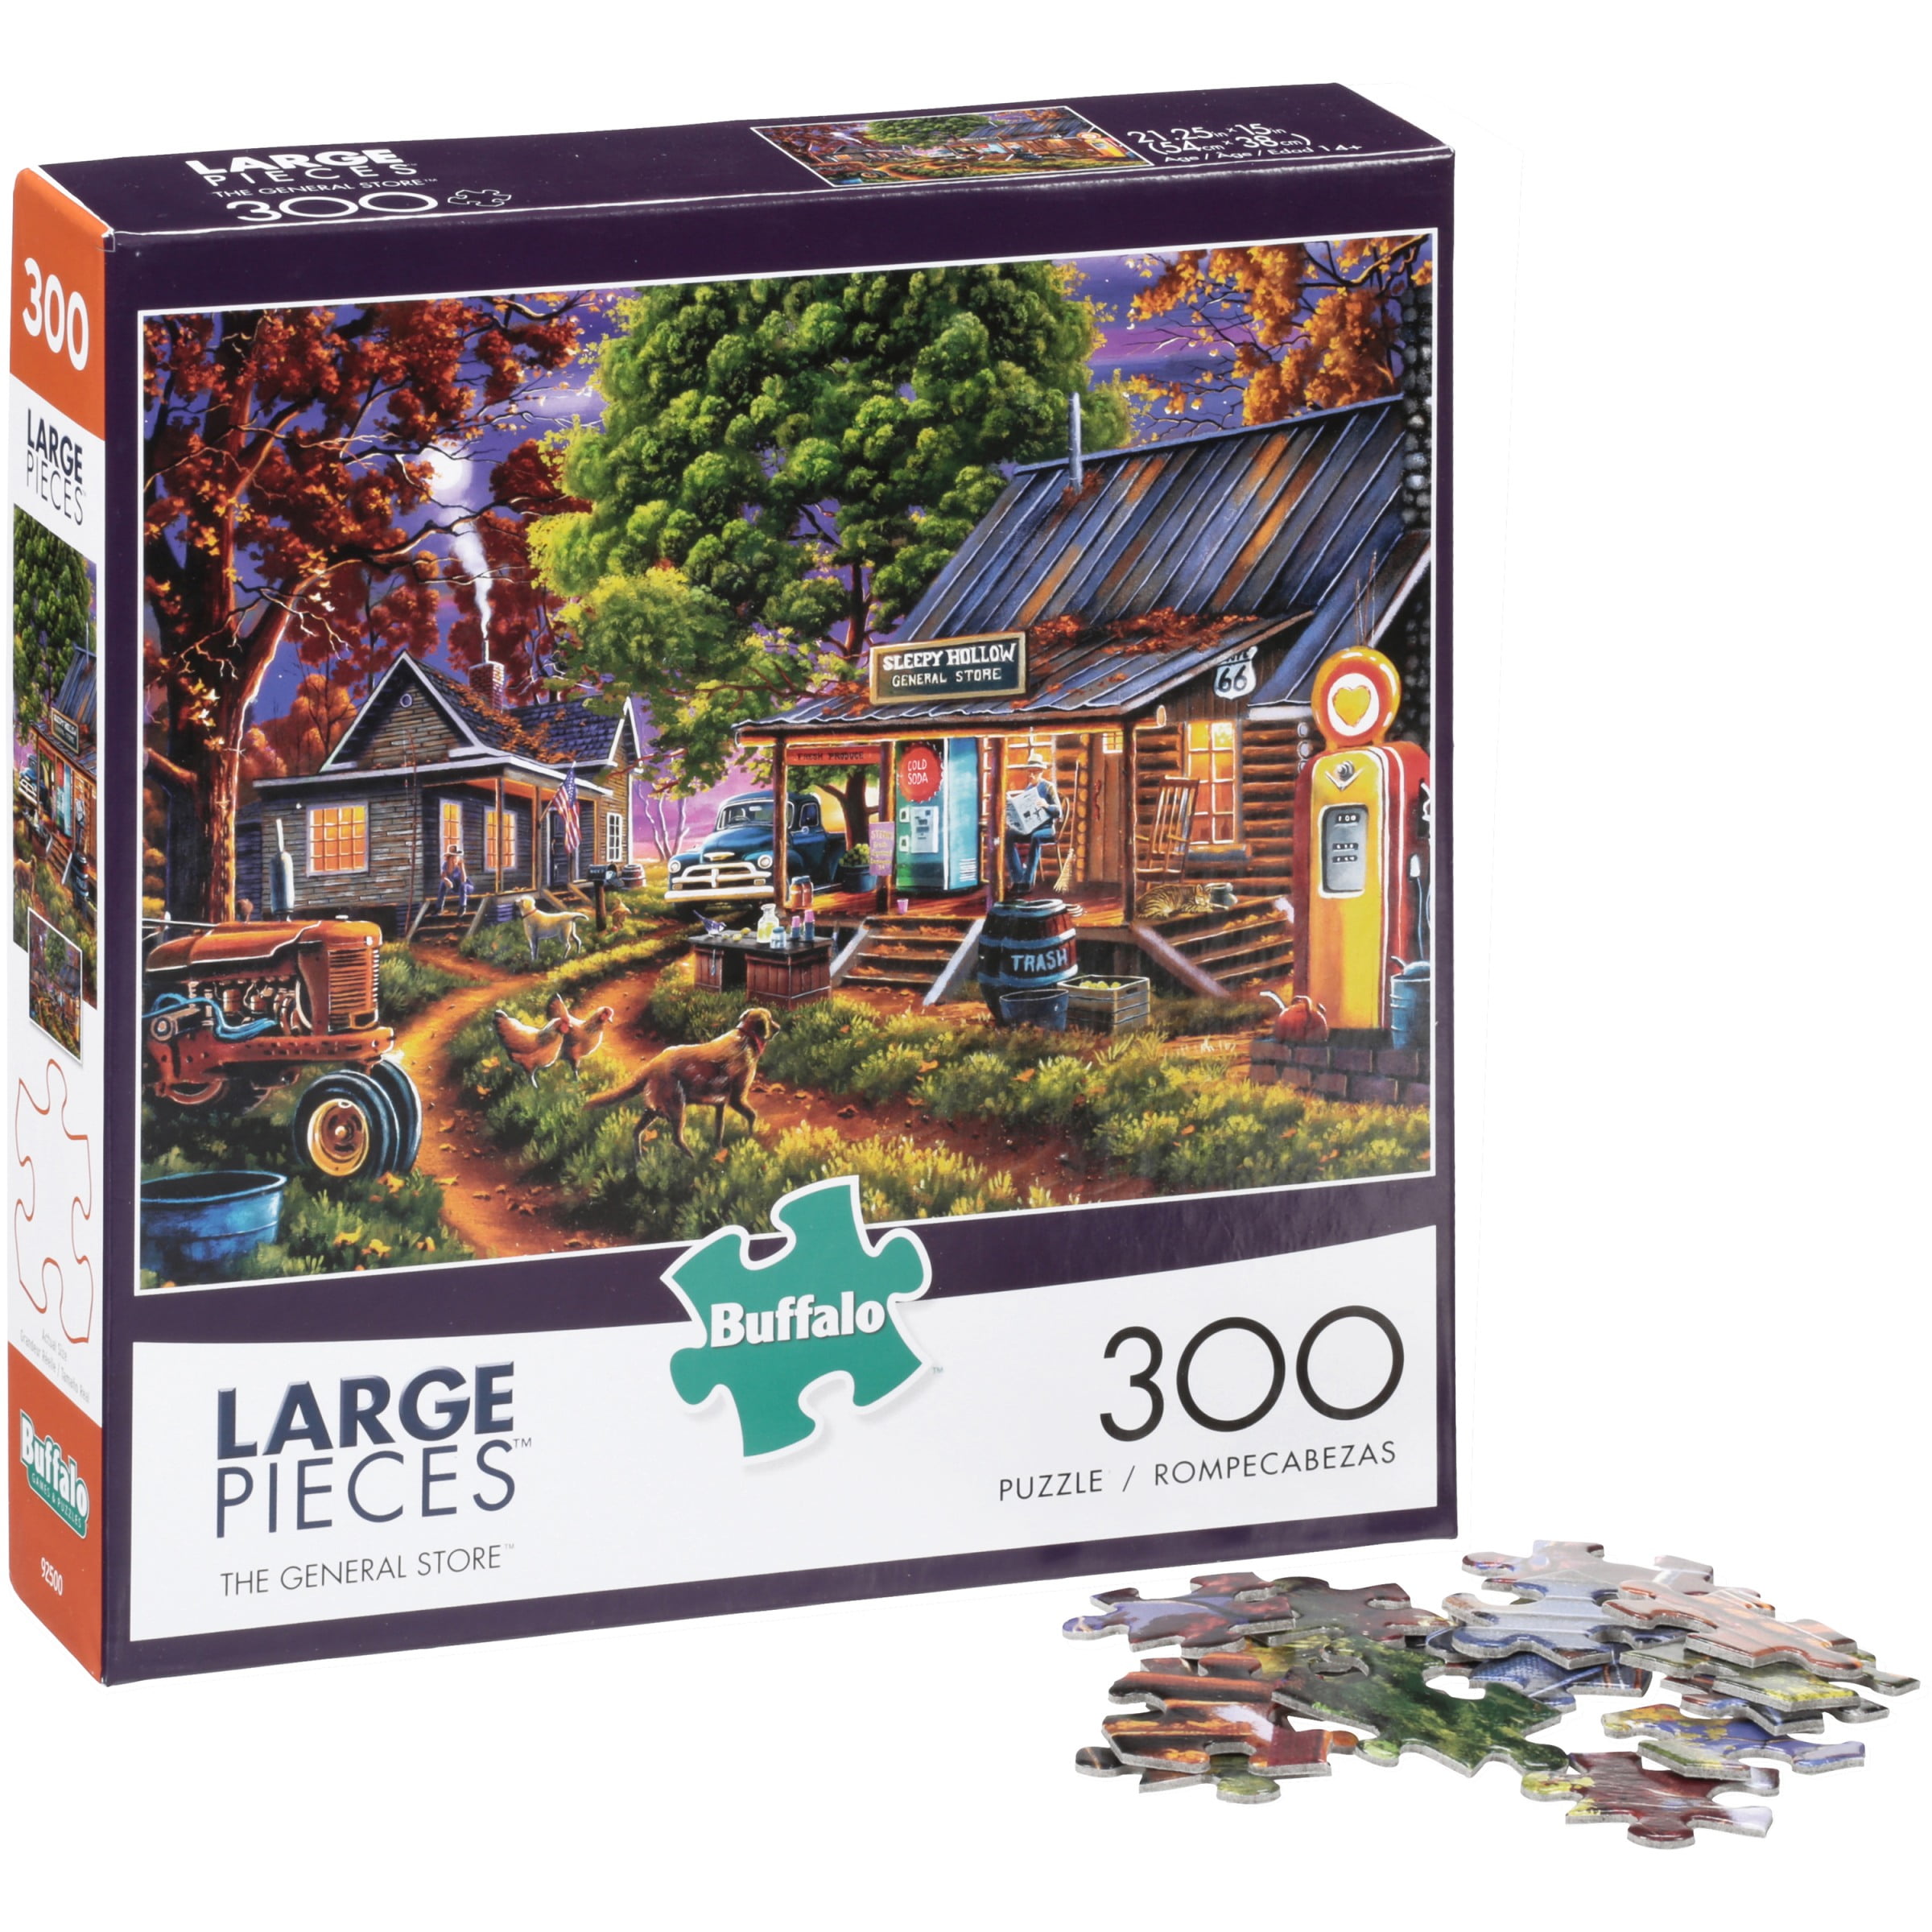 Puzzles for Adults 300 Piece Puzzles 300 Piece Puzzles for Adults Puzzle Adult Difficult and Challenge Woman